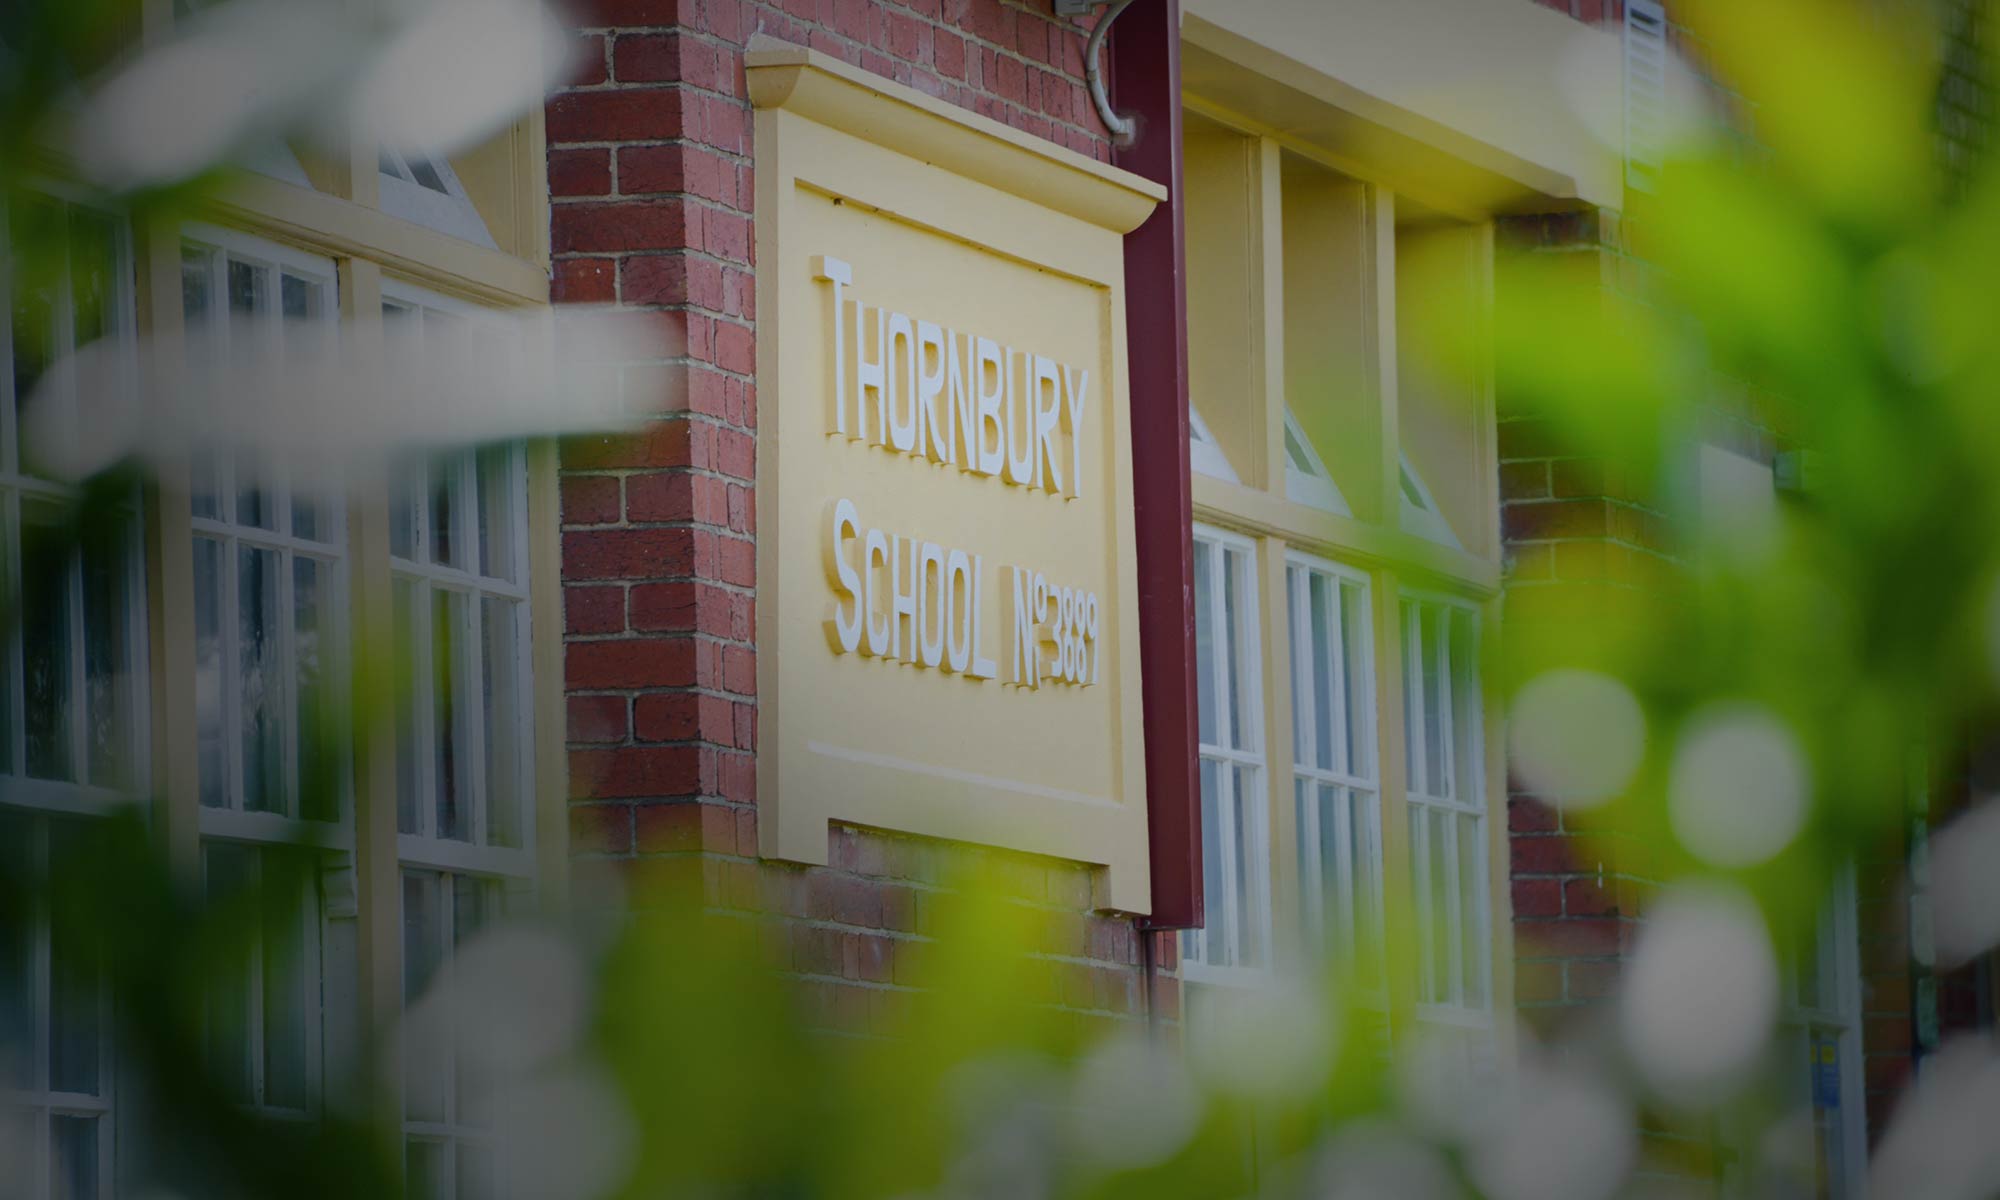 Thornbury Primary School